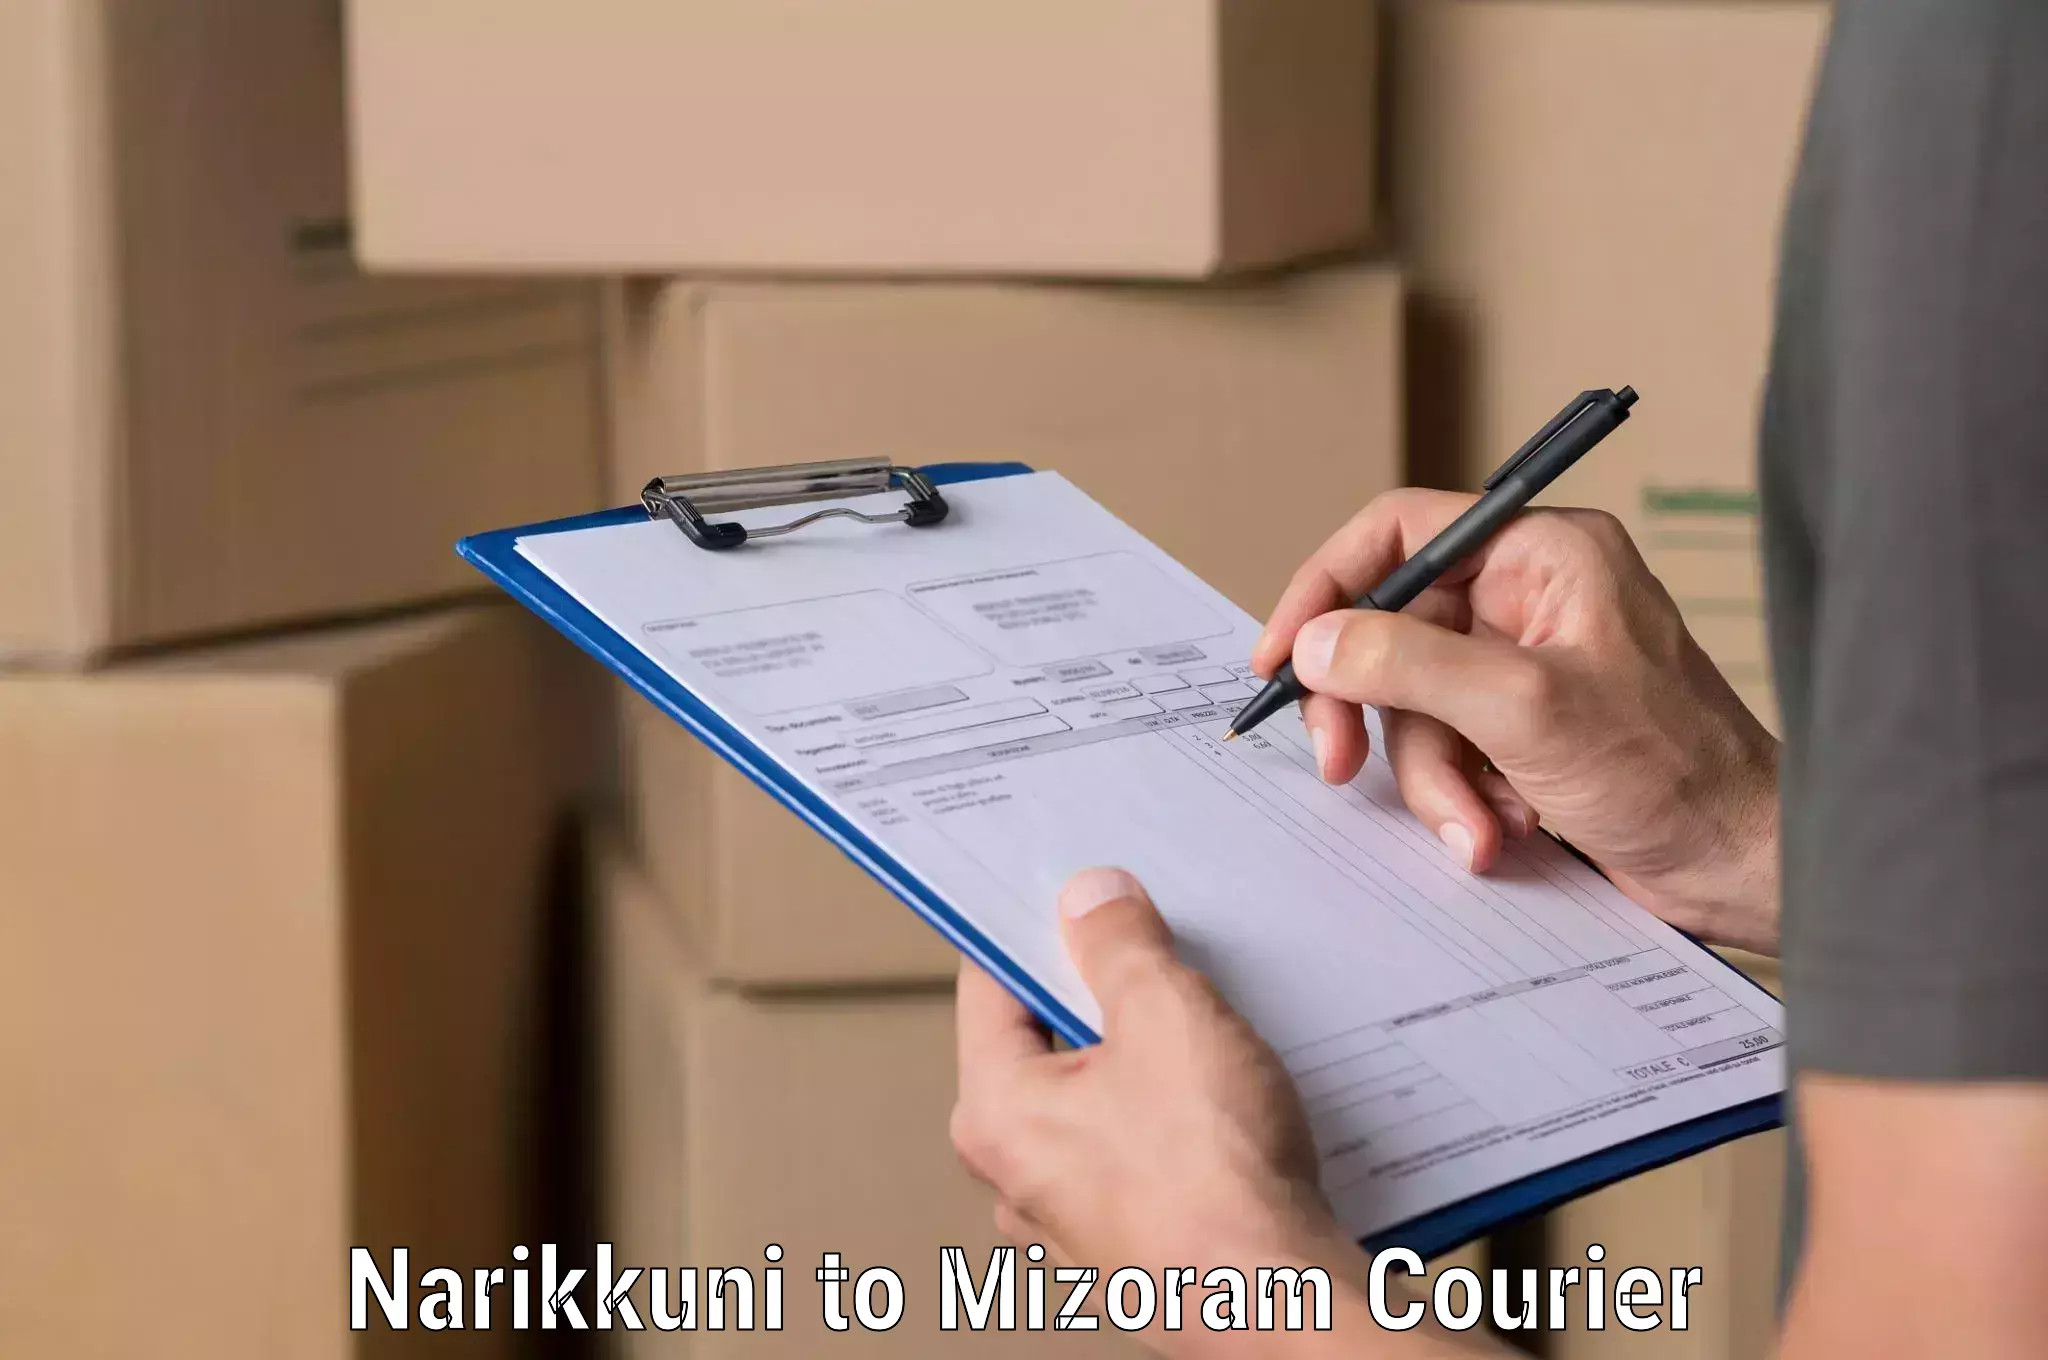 Efficient freight service Narikkuni to Saitual